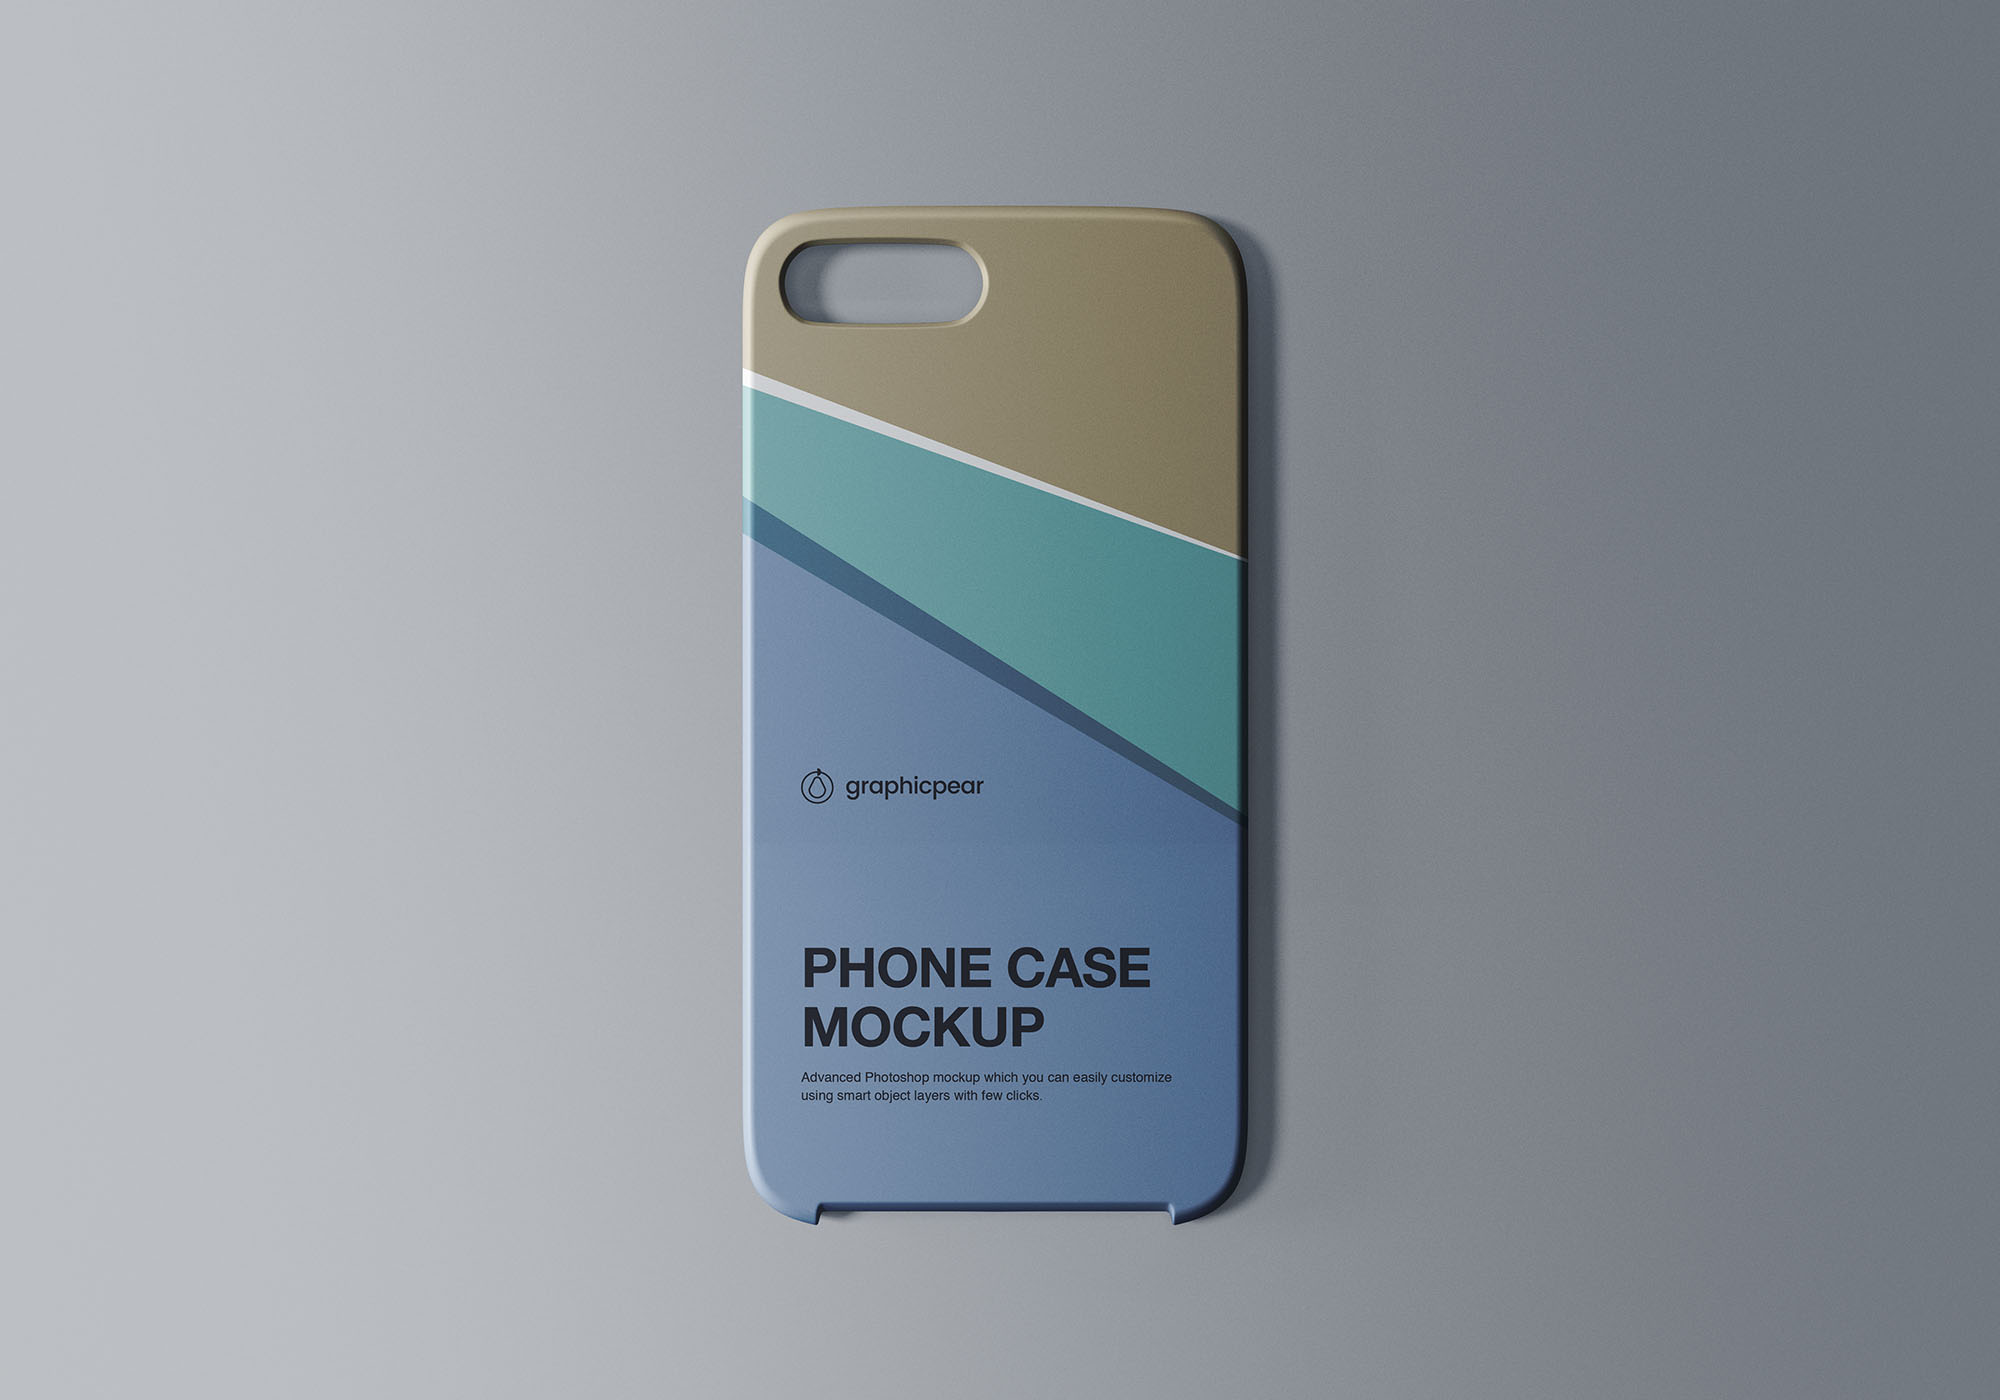 手机壳/手机保护壳外观设计样机模板 Phone Case Mockup插图